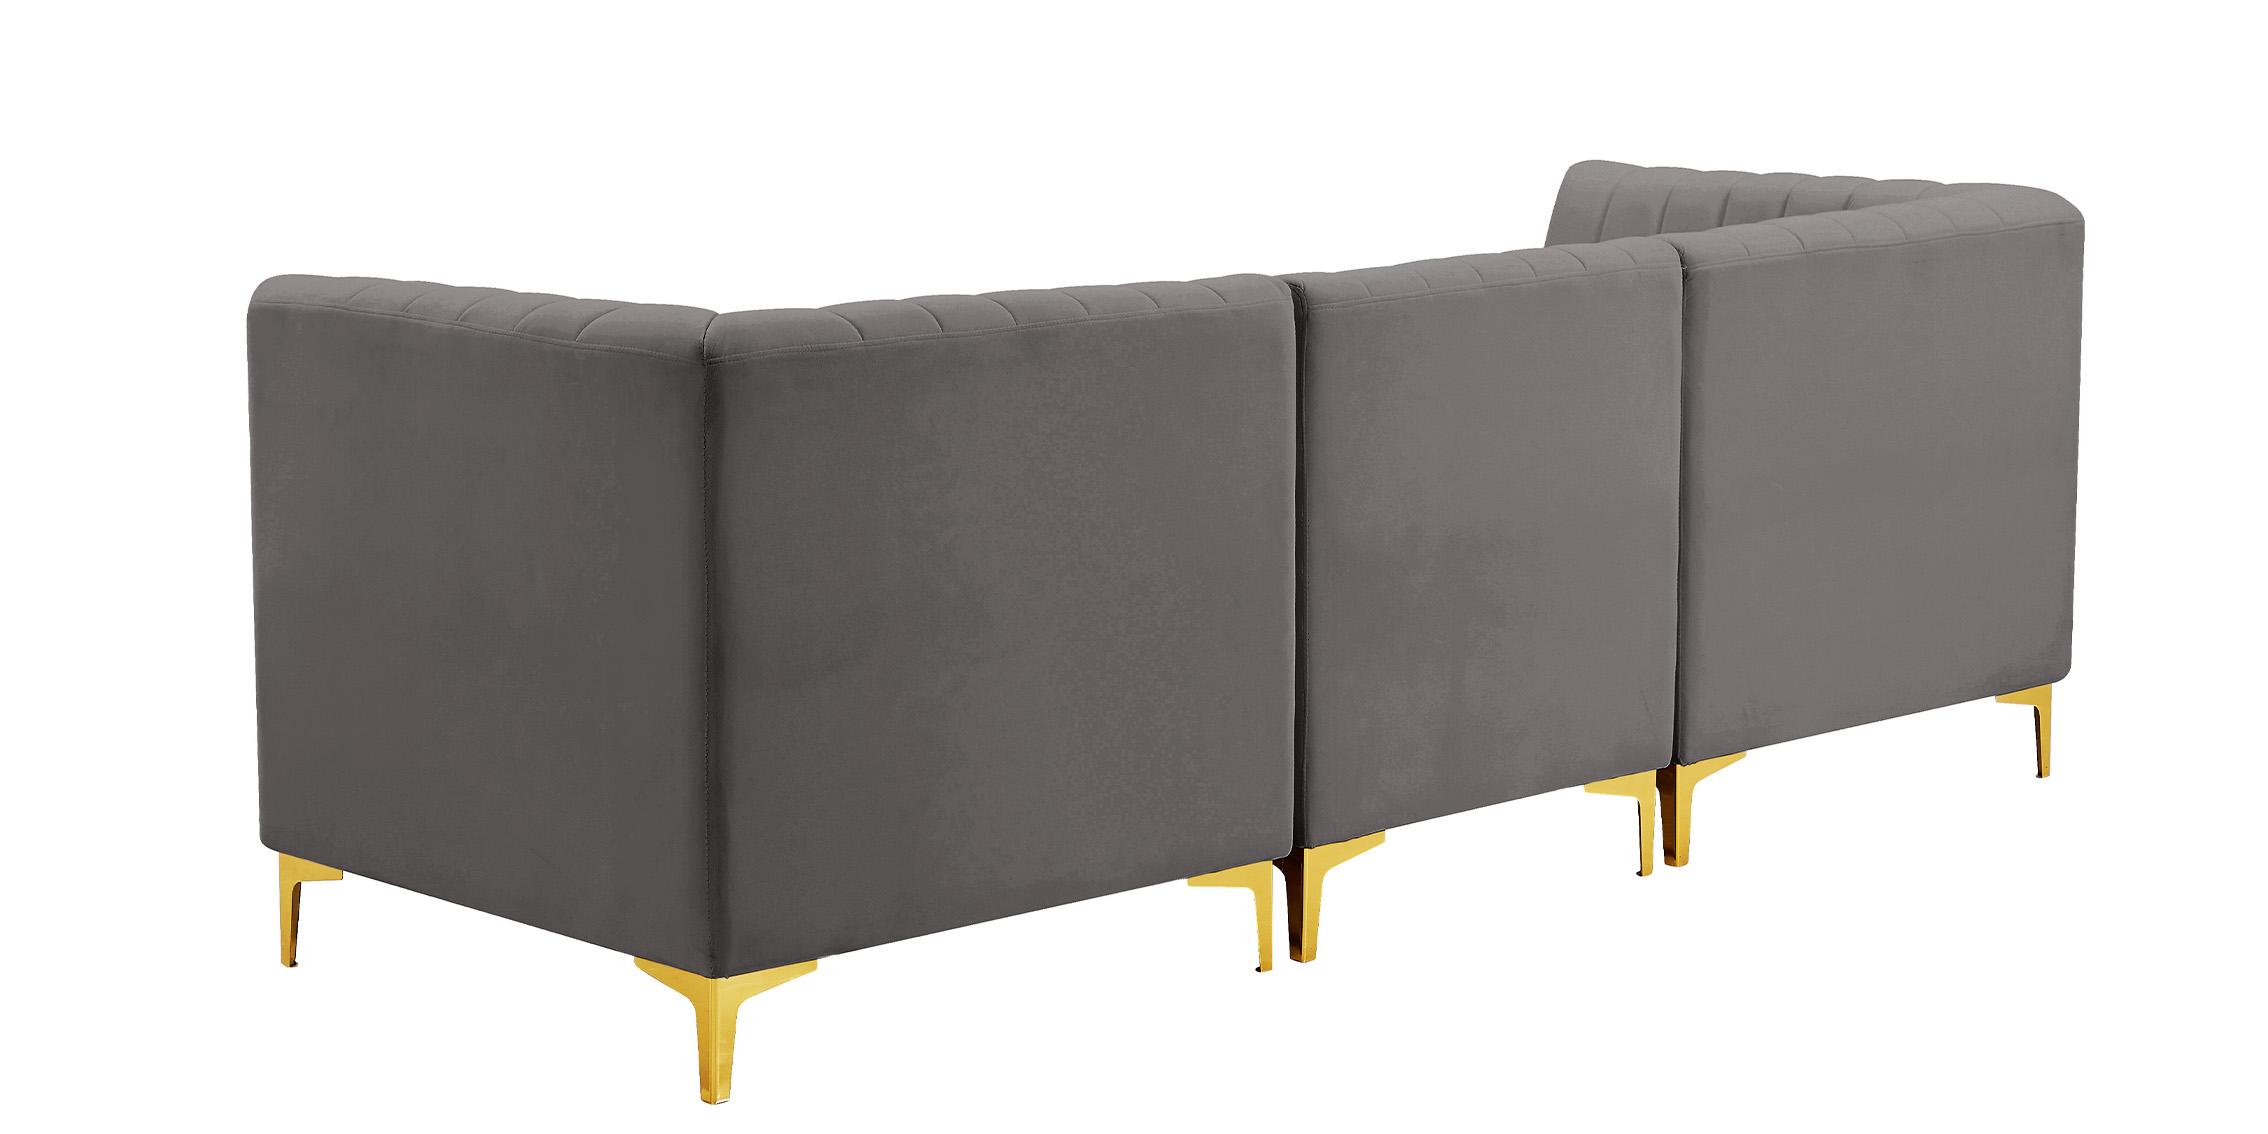 

    
604Grey-S93 Meridian Furniture Modular Sectional Sofa
